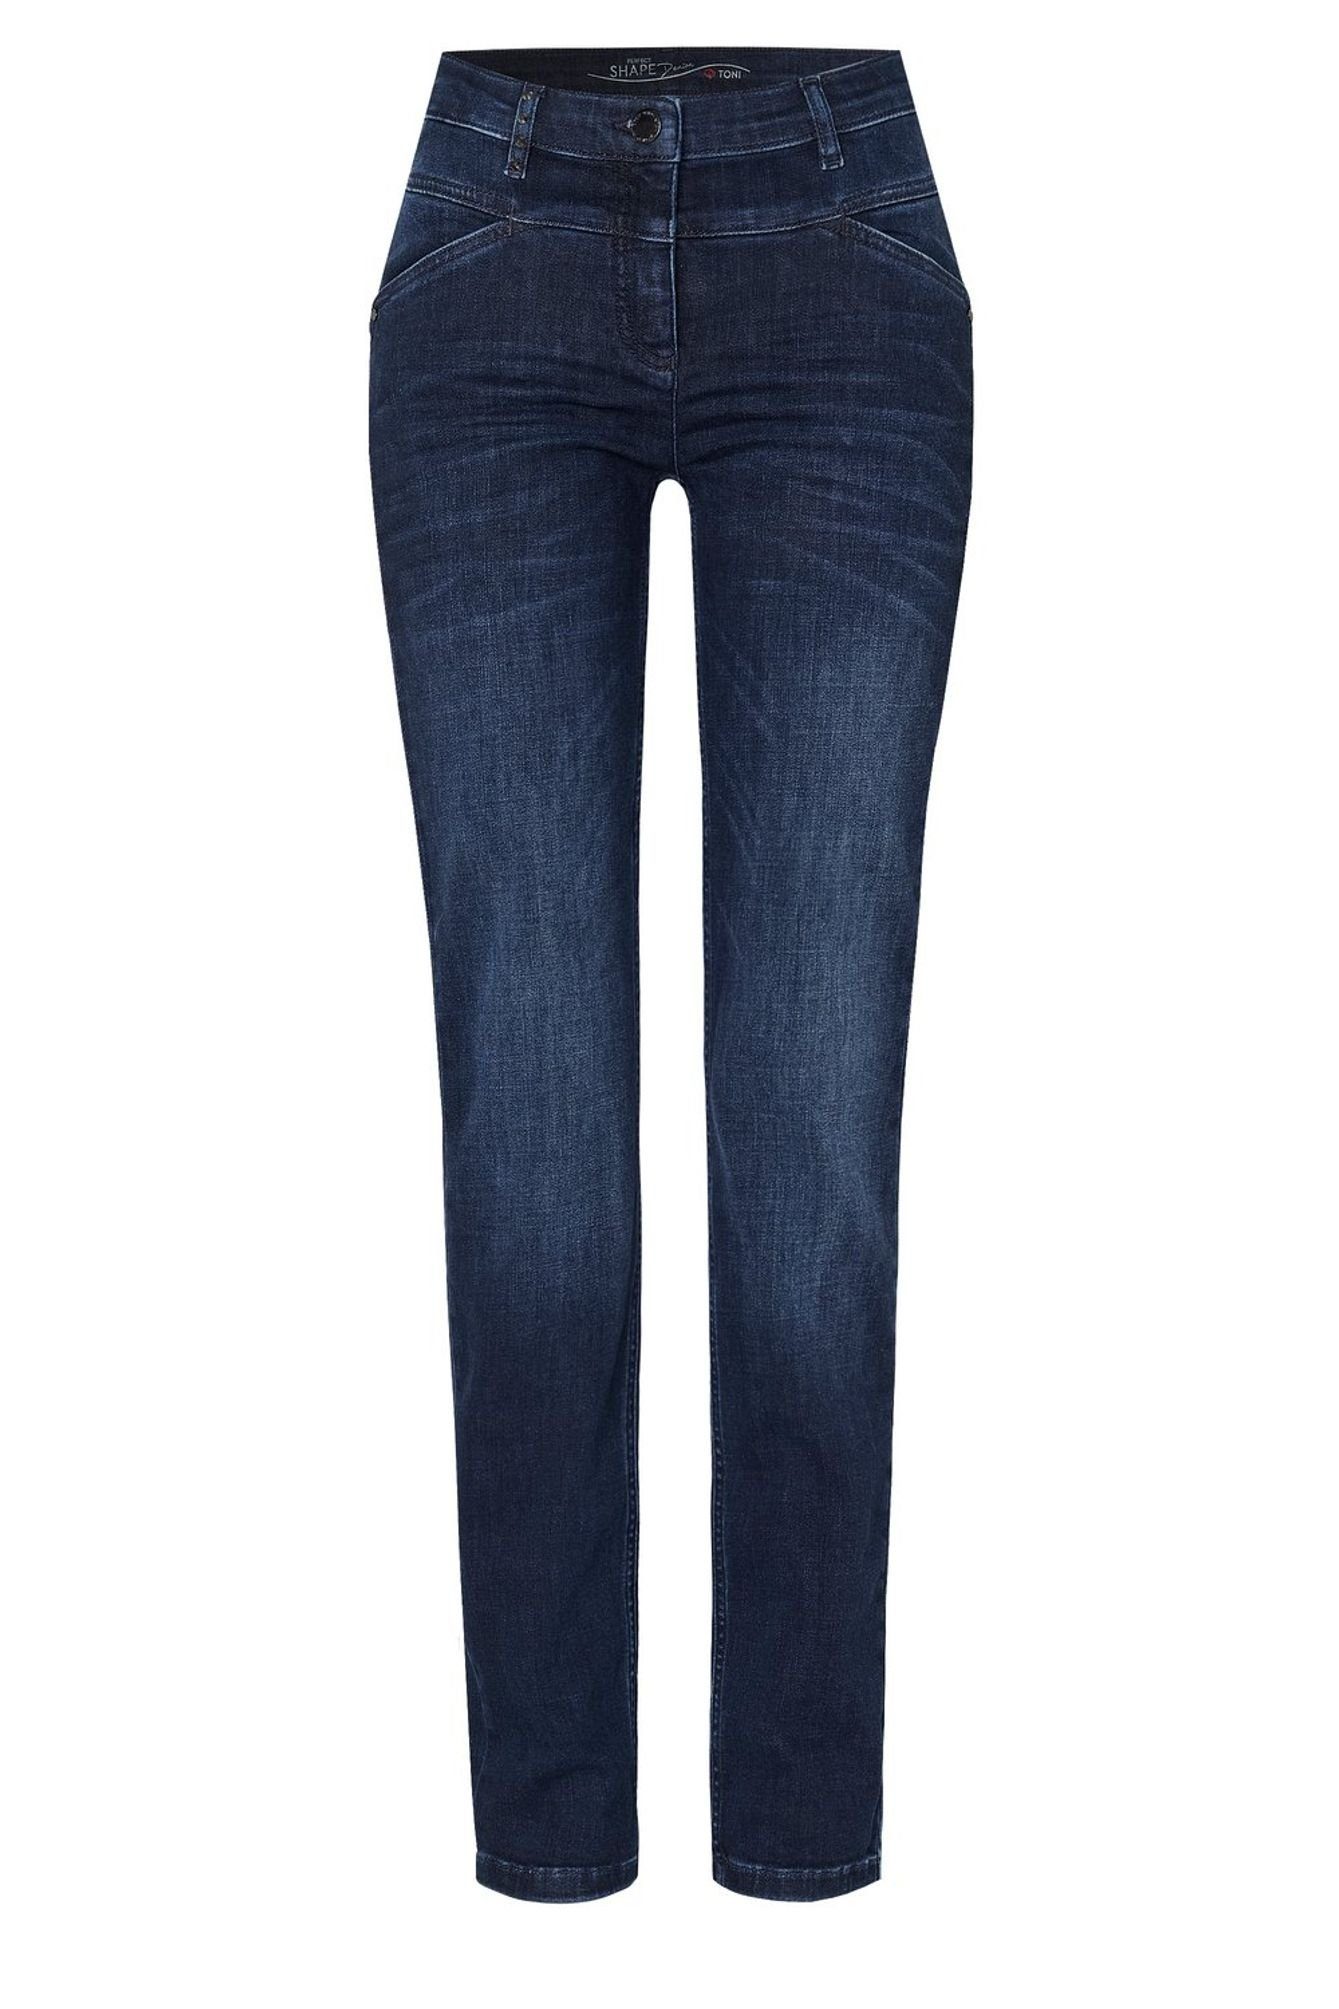 TONI 5-Pocket-Jeans 11-01 1106-17 5-Pocket-Design (574) used blue